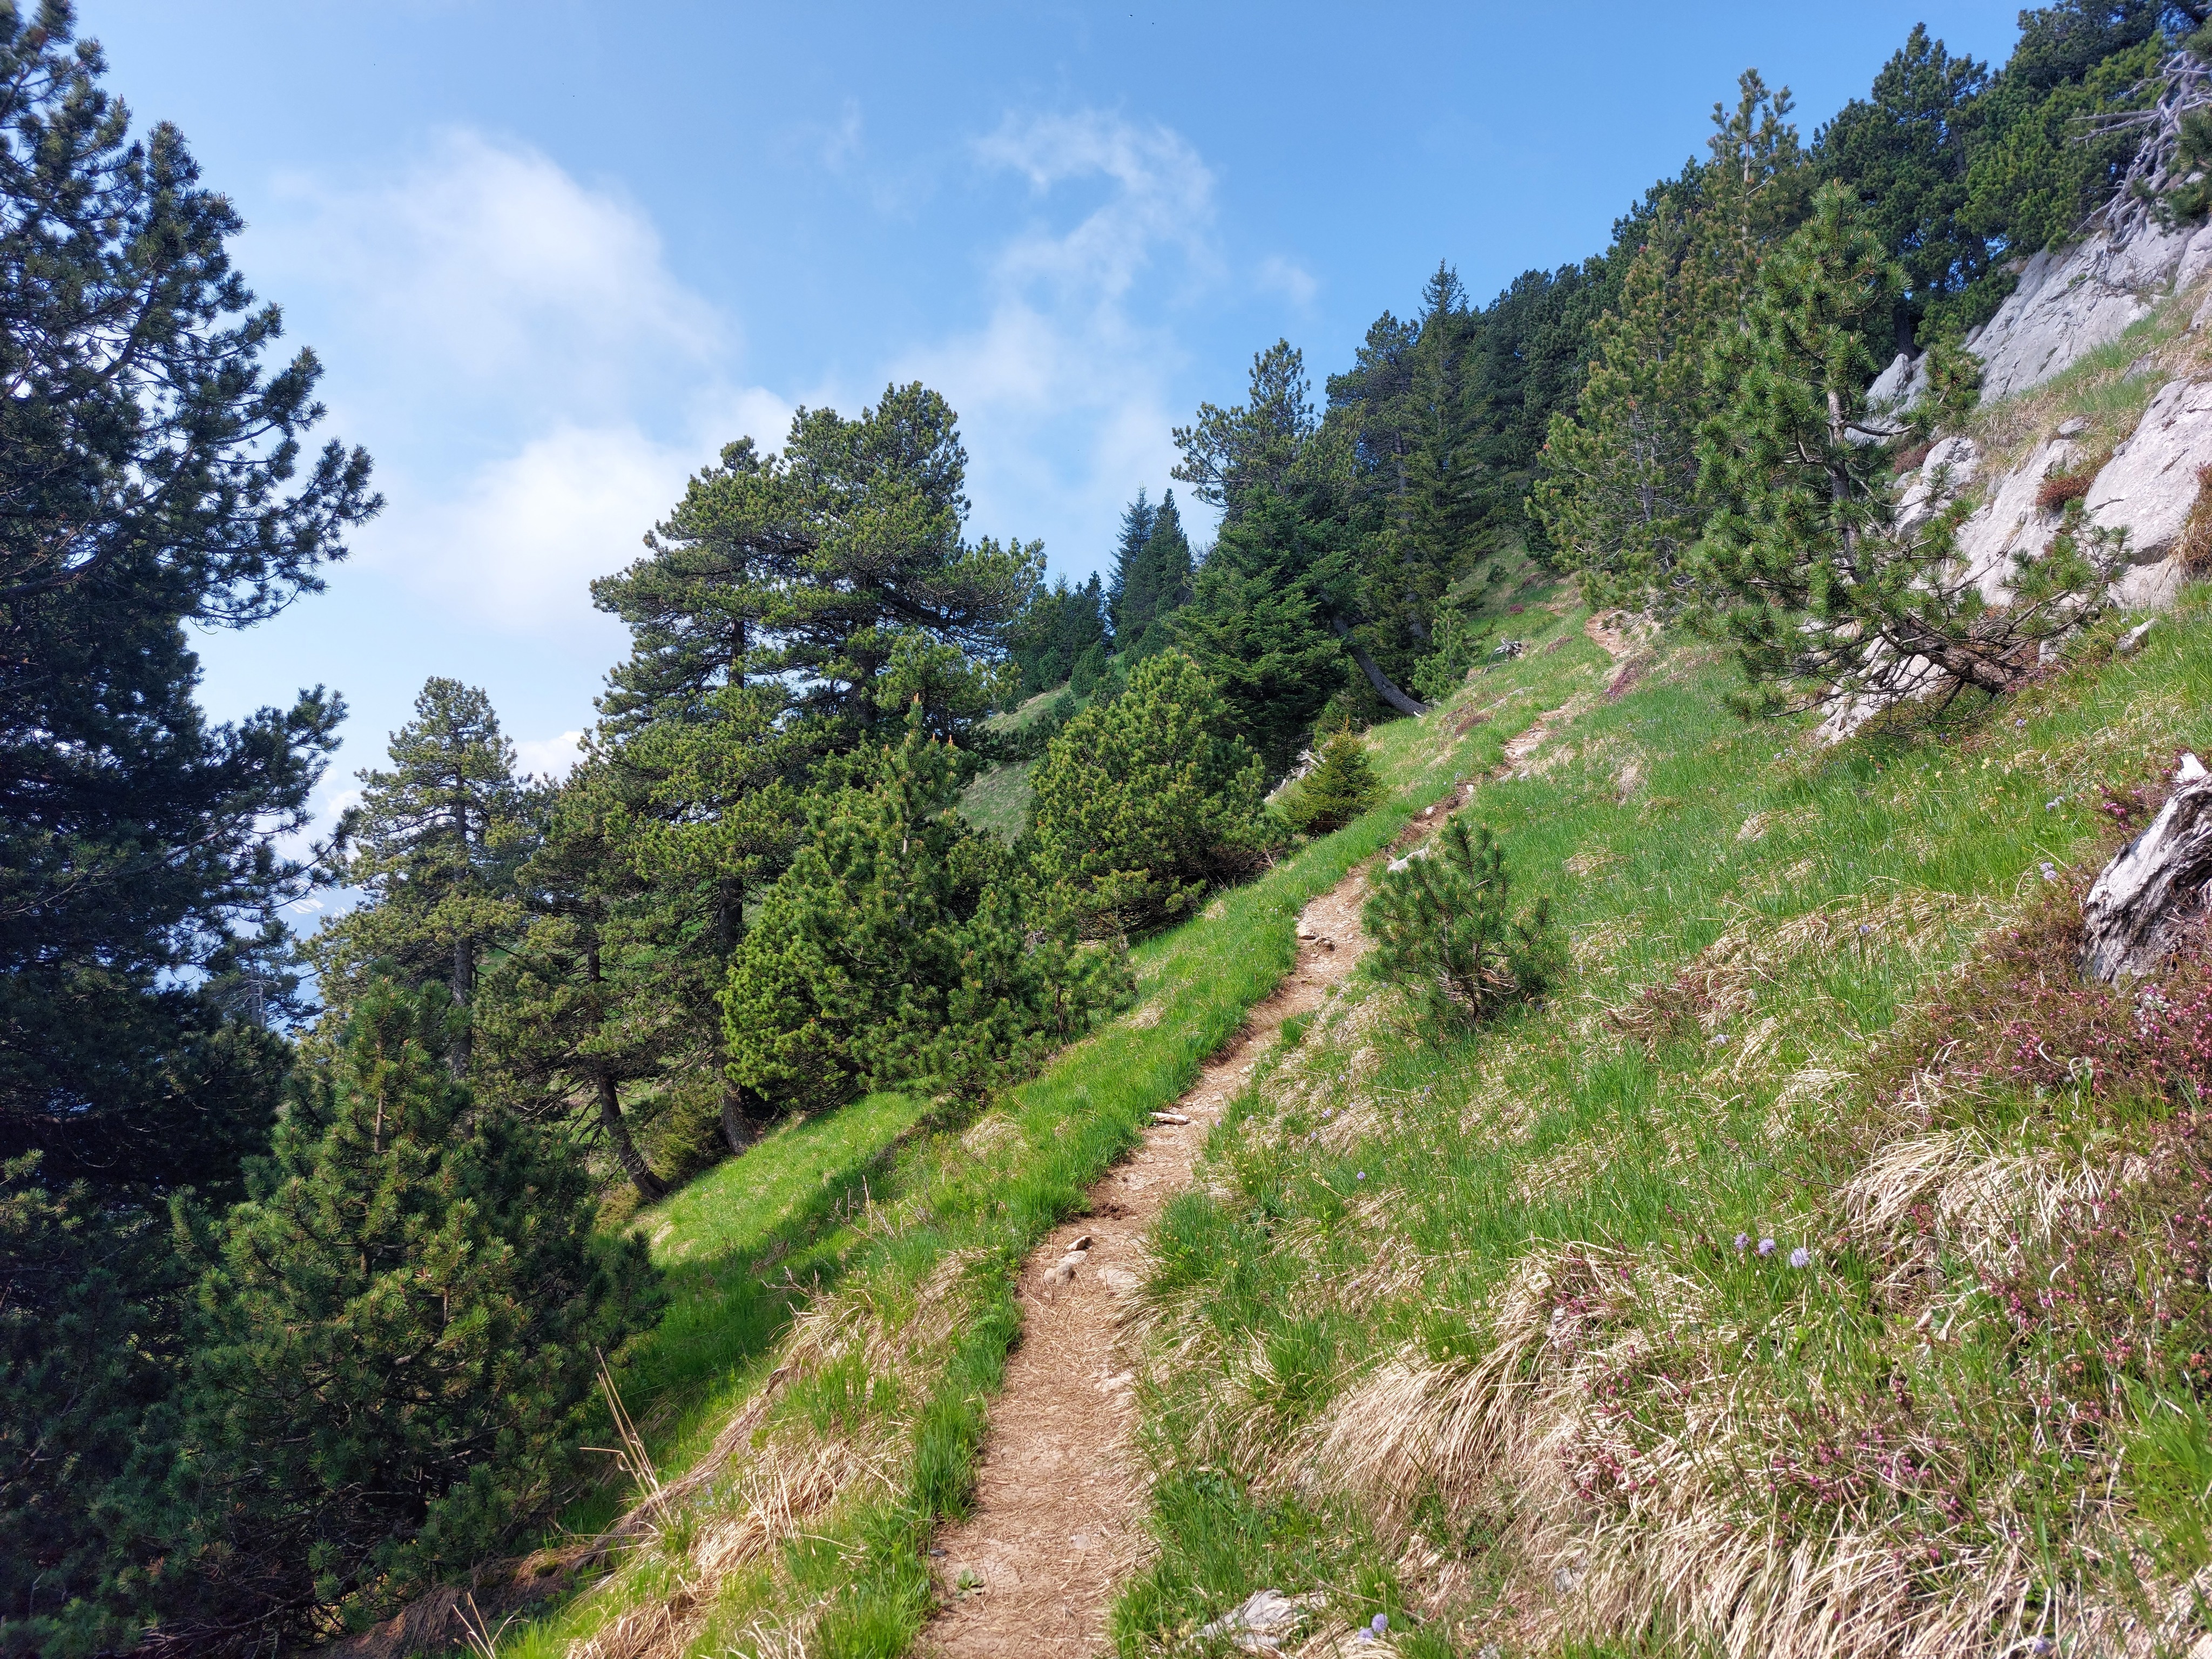 Trail cutting through pine trees